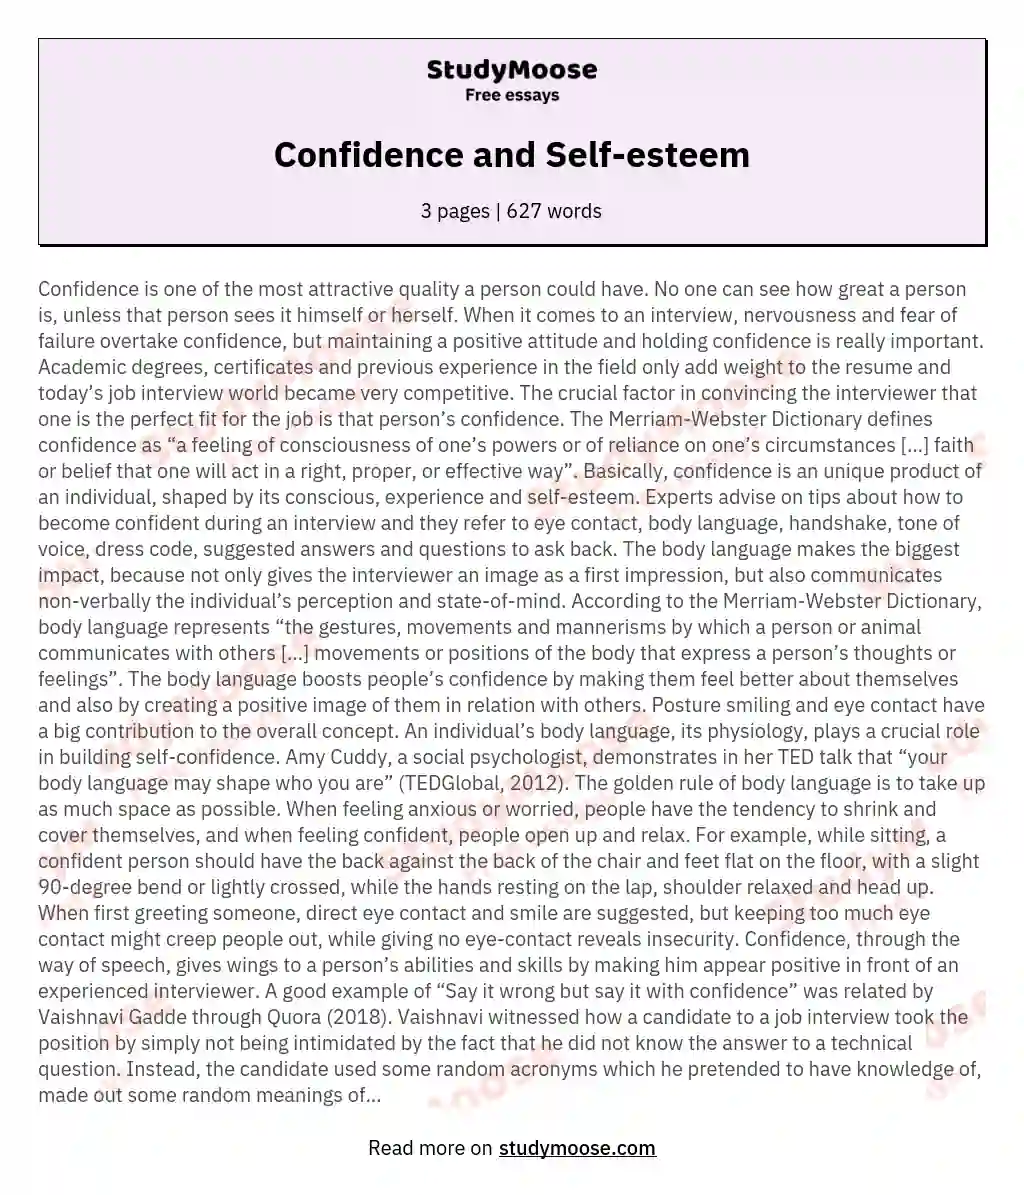 Confidence and Self-esteem